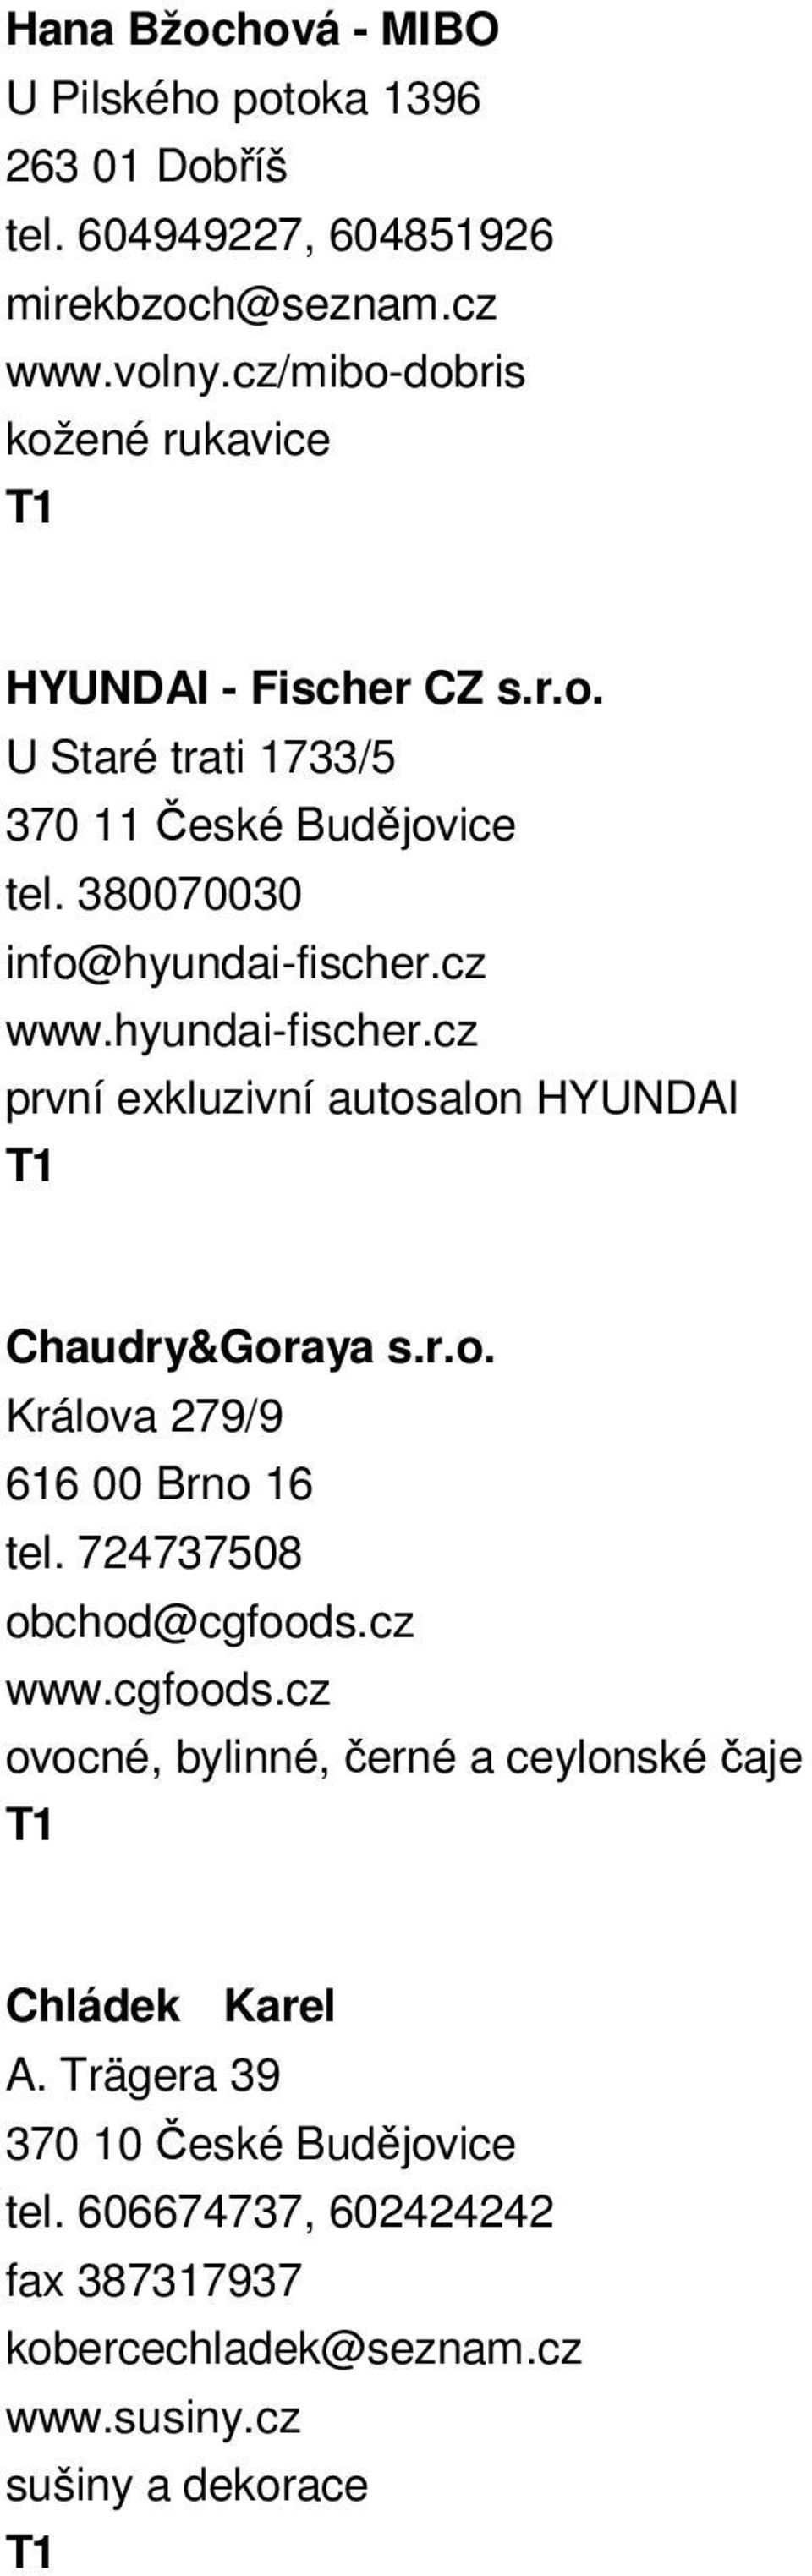 hyundai-fischer.cz první exkluzivní autosalon HYUNDAI Chaudry&Goraya s.r.o. Králova 279/9 616 00 Brno 16 tel. 724737508 obchod@cgfoods.